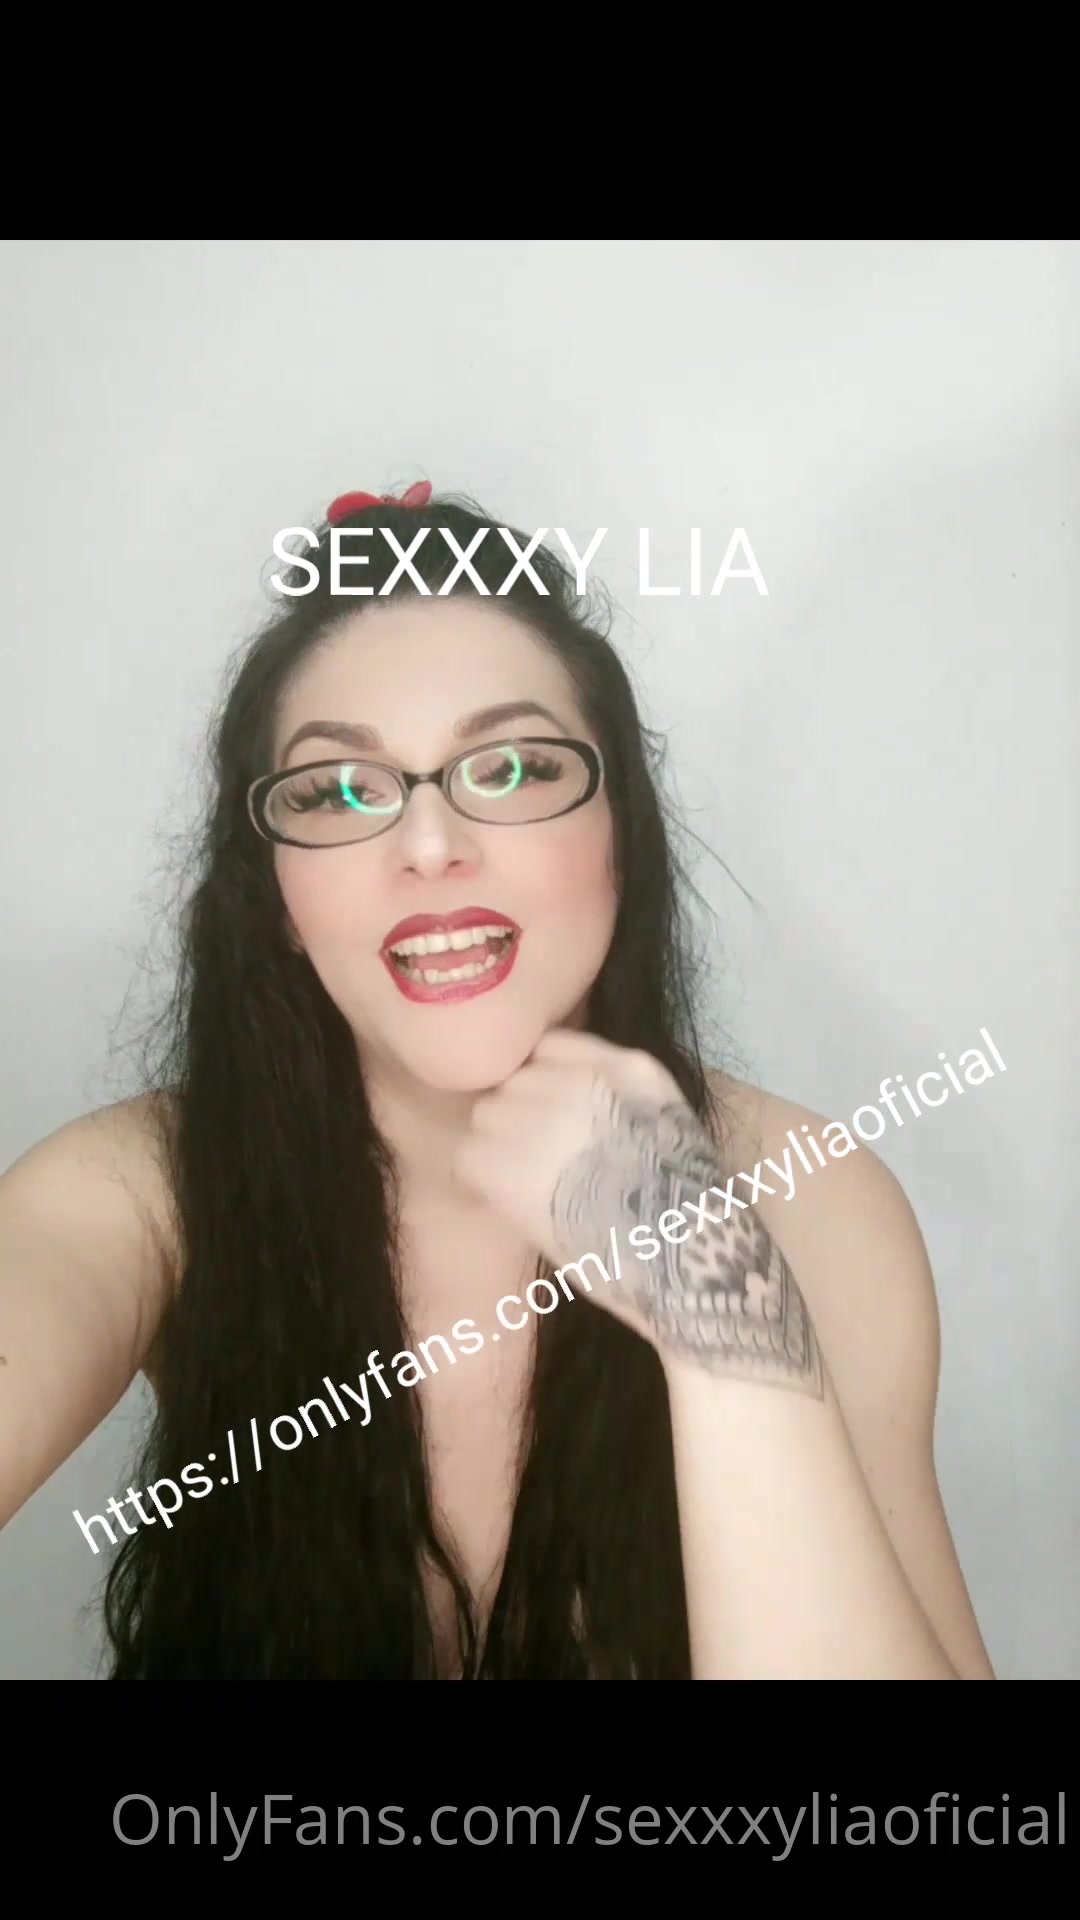 Sexxy Video New - Sexxxyliaoficial quieres ver como me encanta mamar la verga y com xxx  onlyfans porn videos